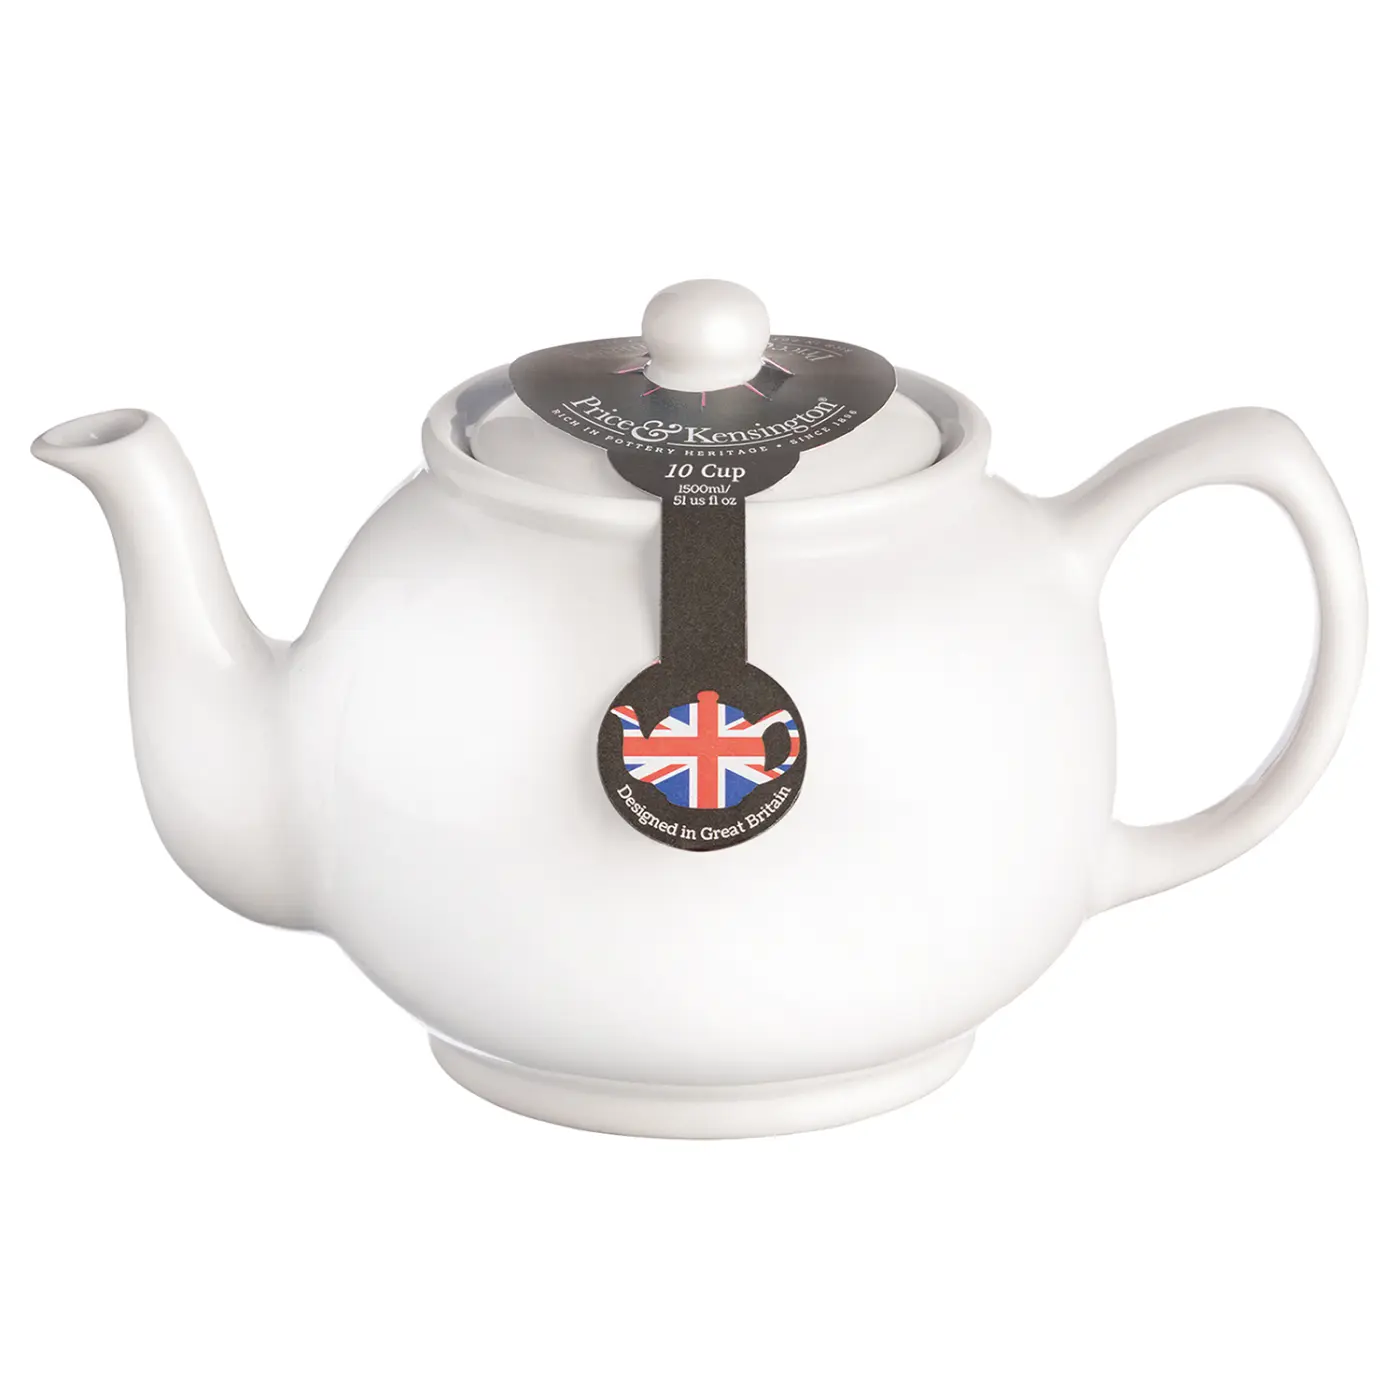 Price & Kensington Teekanne klassisch, weiß, 10 Tassen